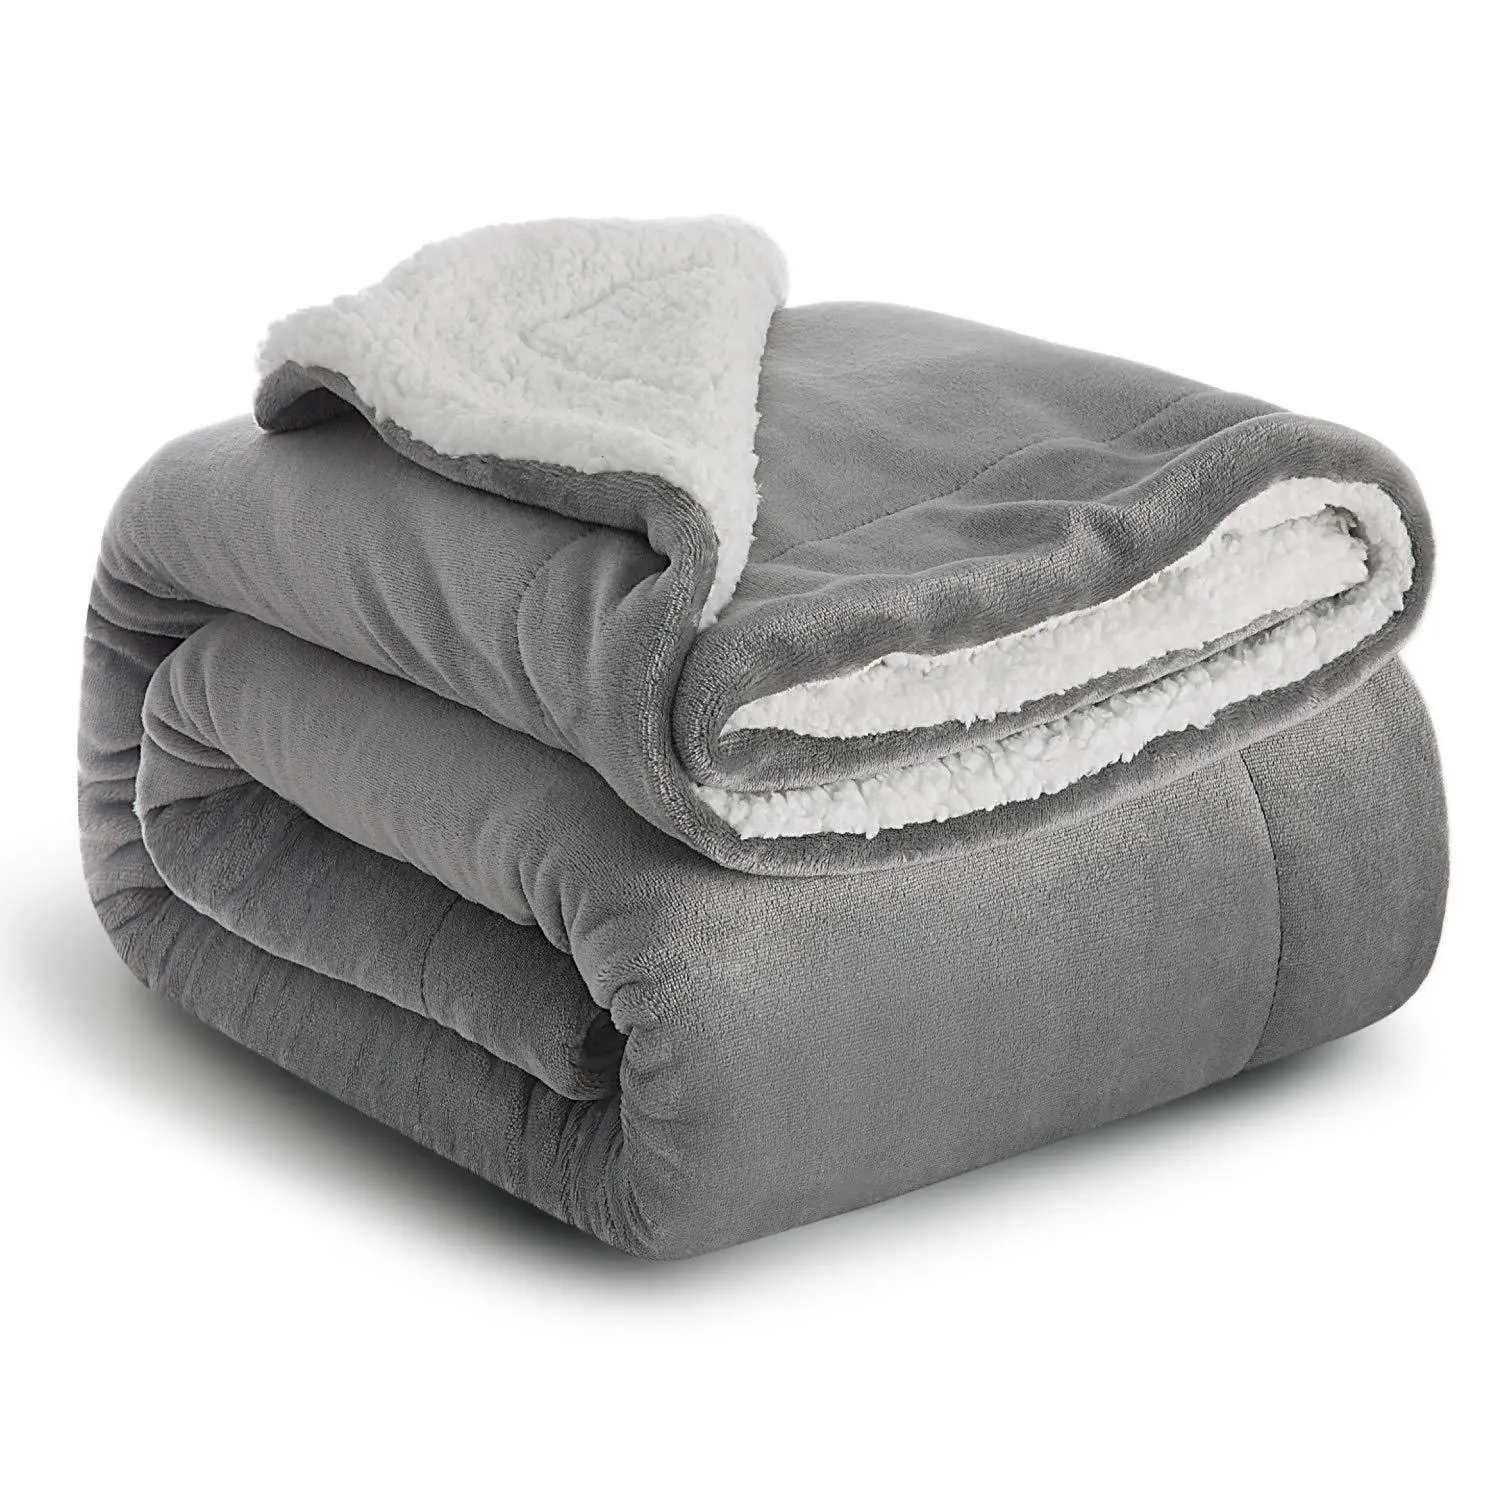 중국 제조 업체 더블 레이어 따뜻한 두꺼운 던져 담요 침대 플란넬 담요 겨울